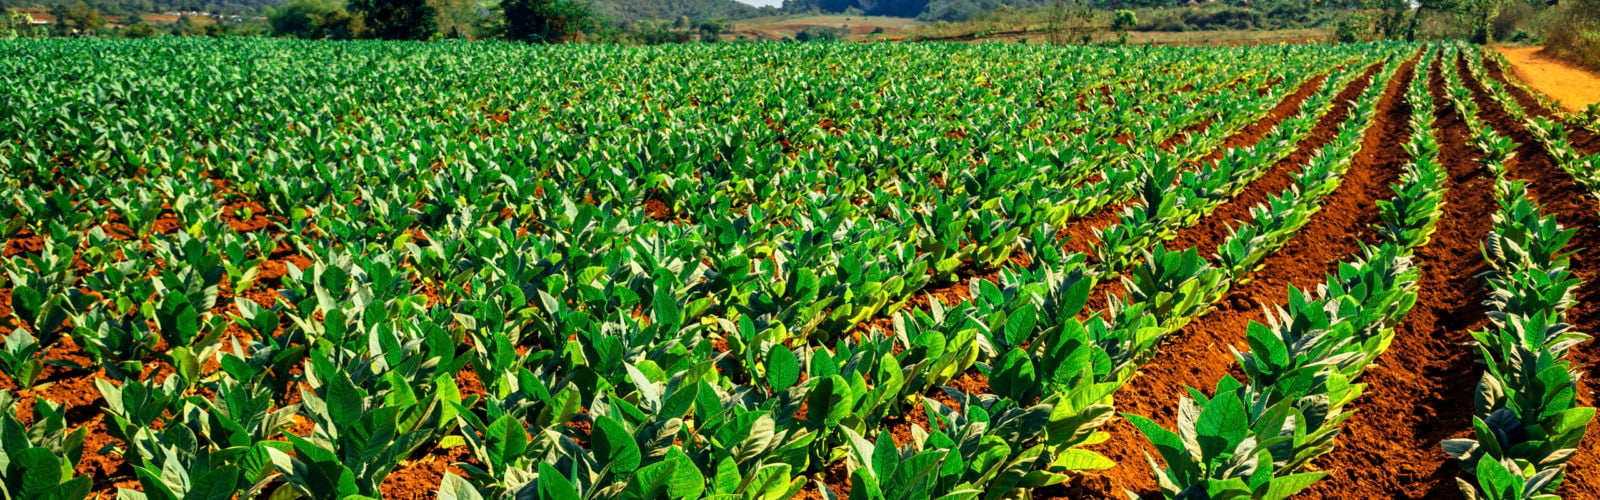 Tobacco fields in Vinales, Cuba